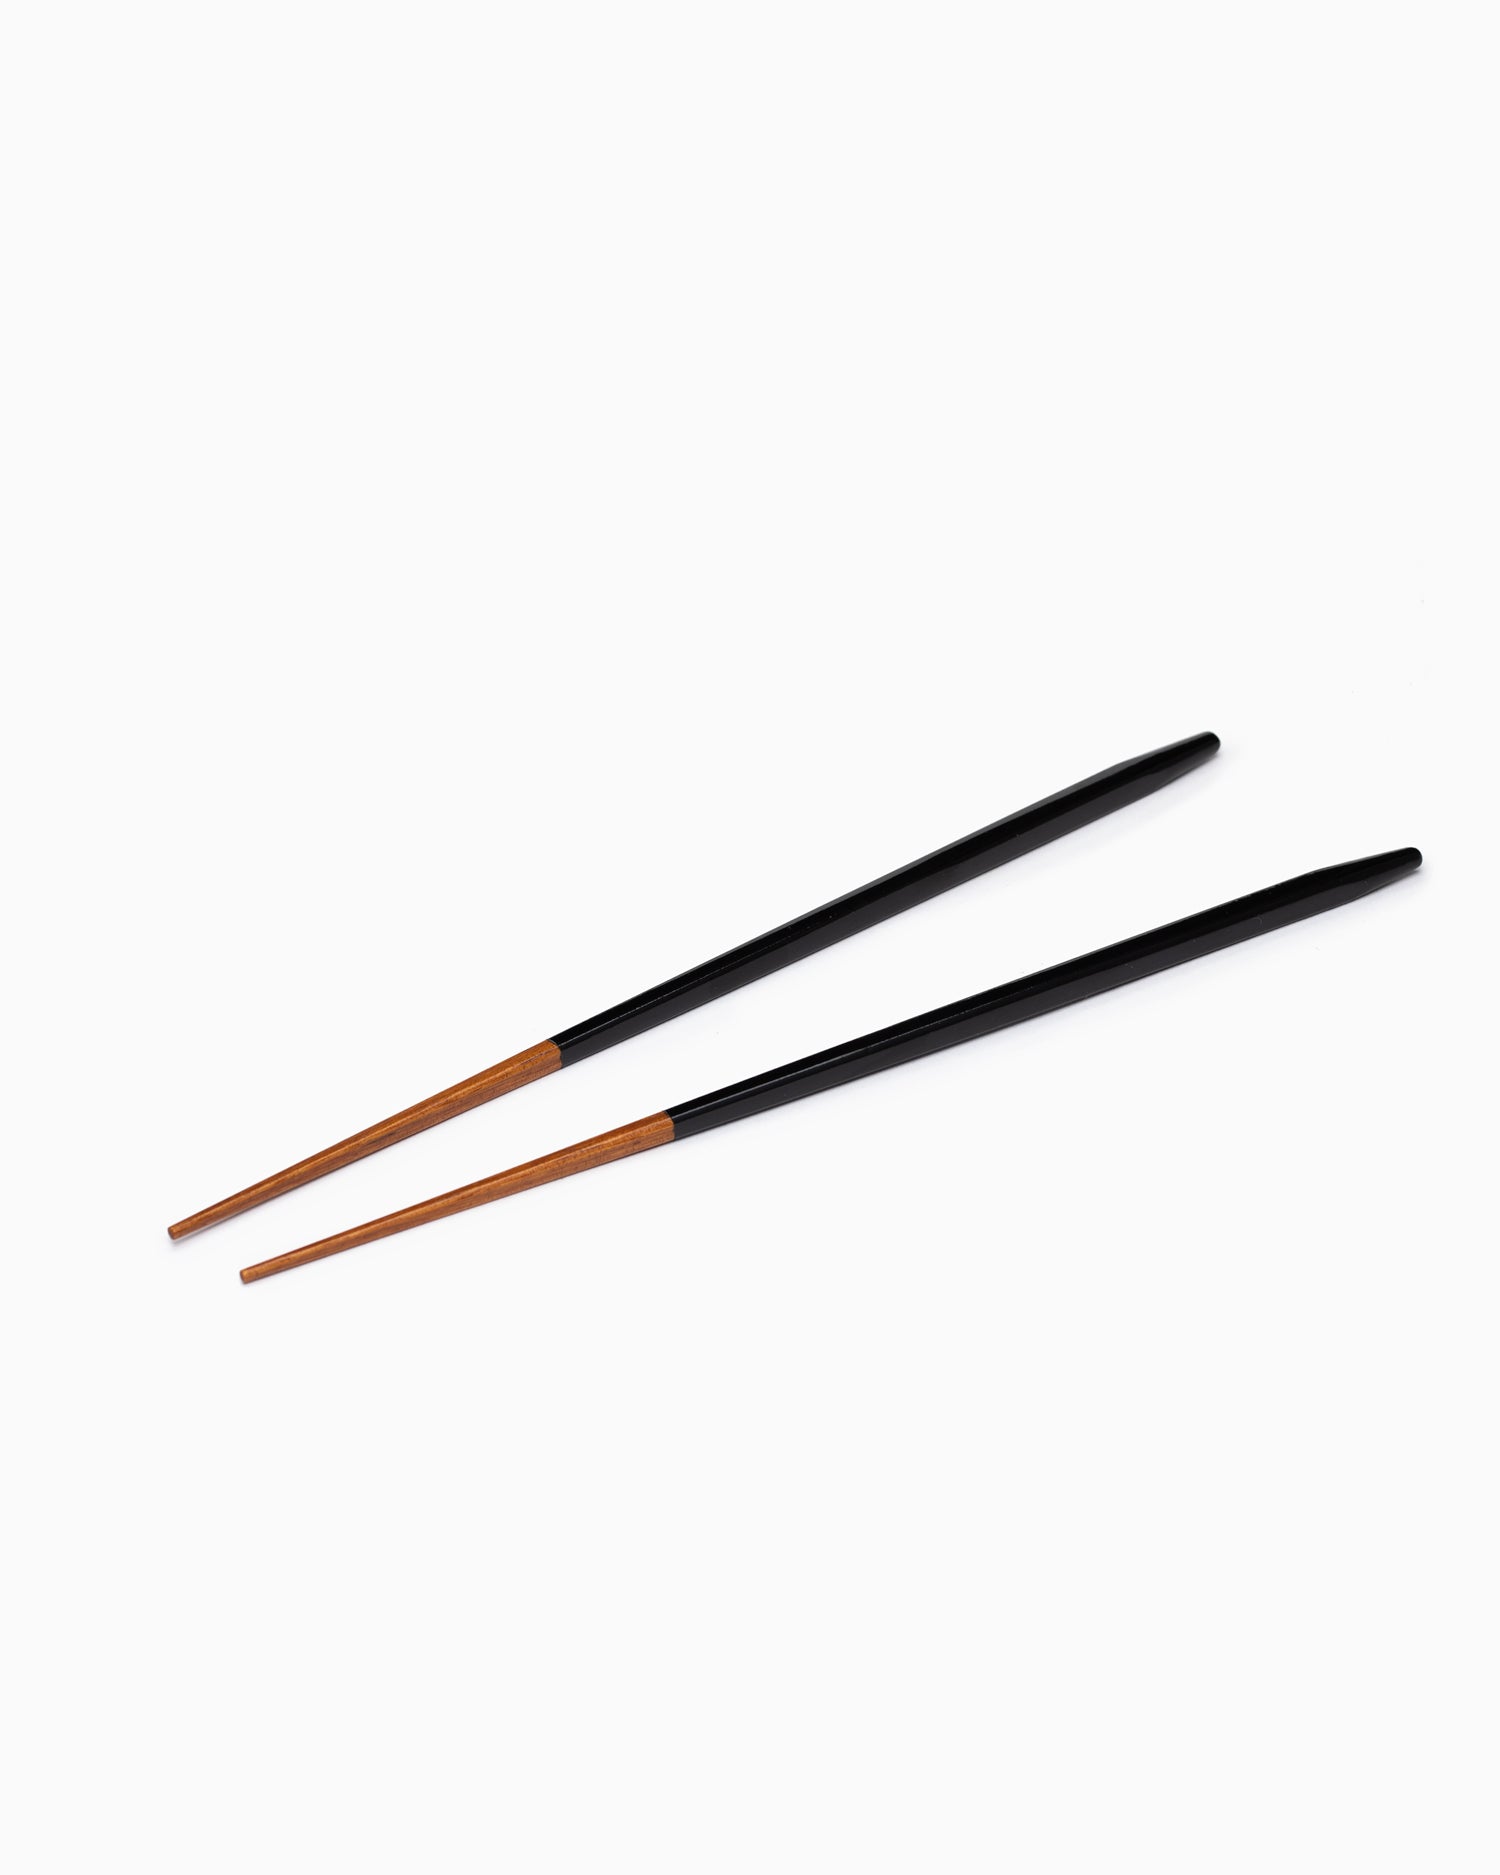 Urushi Slim Chopsticks - Black